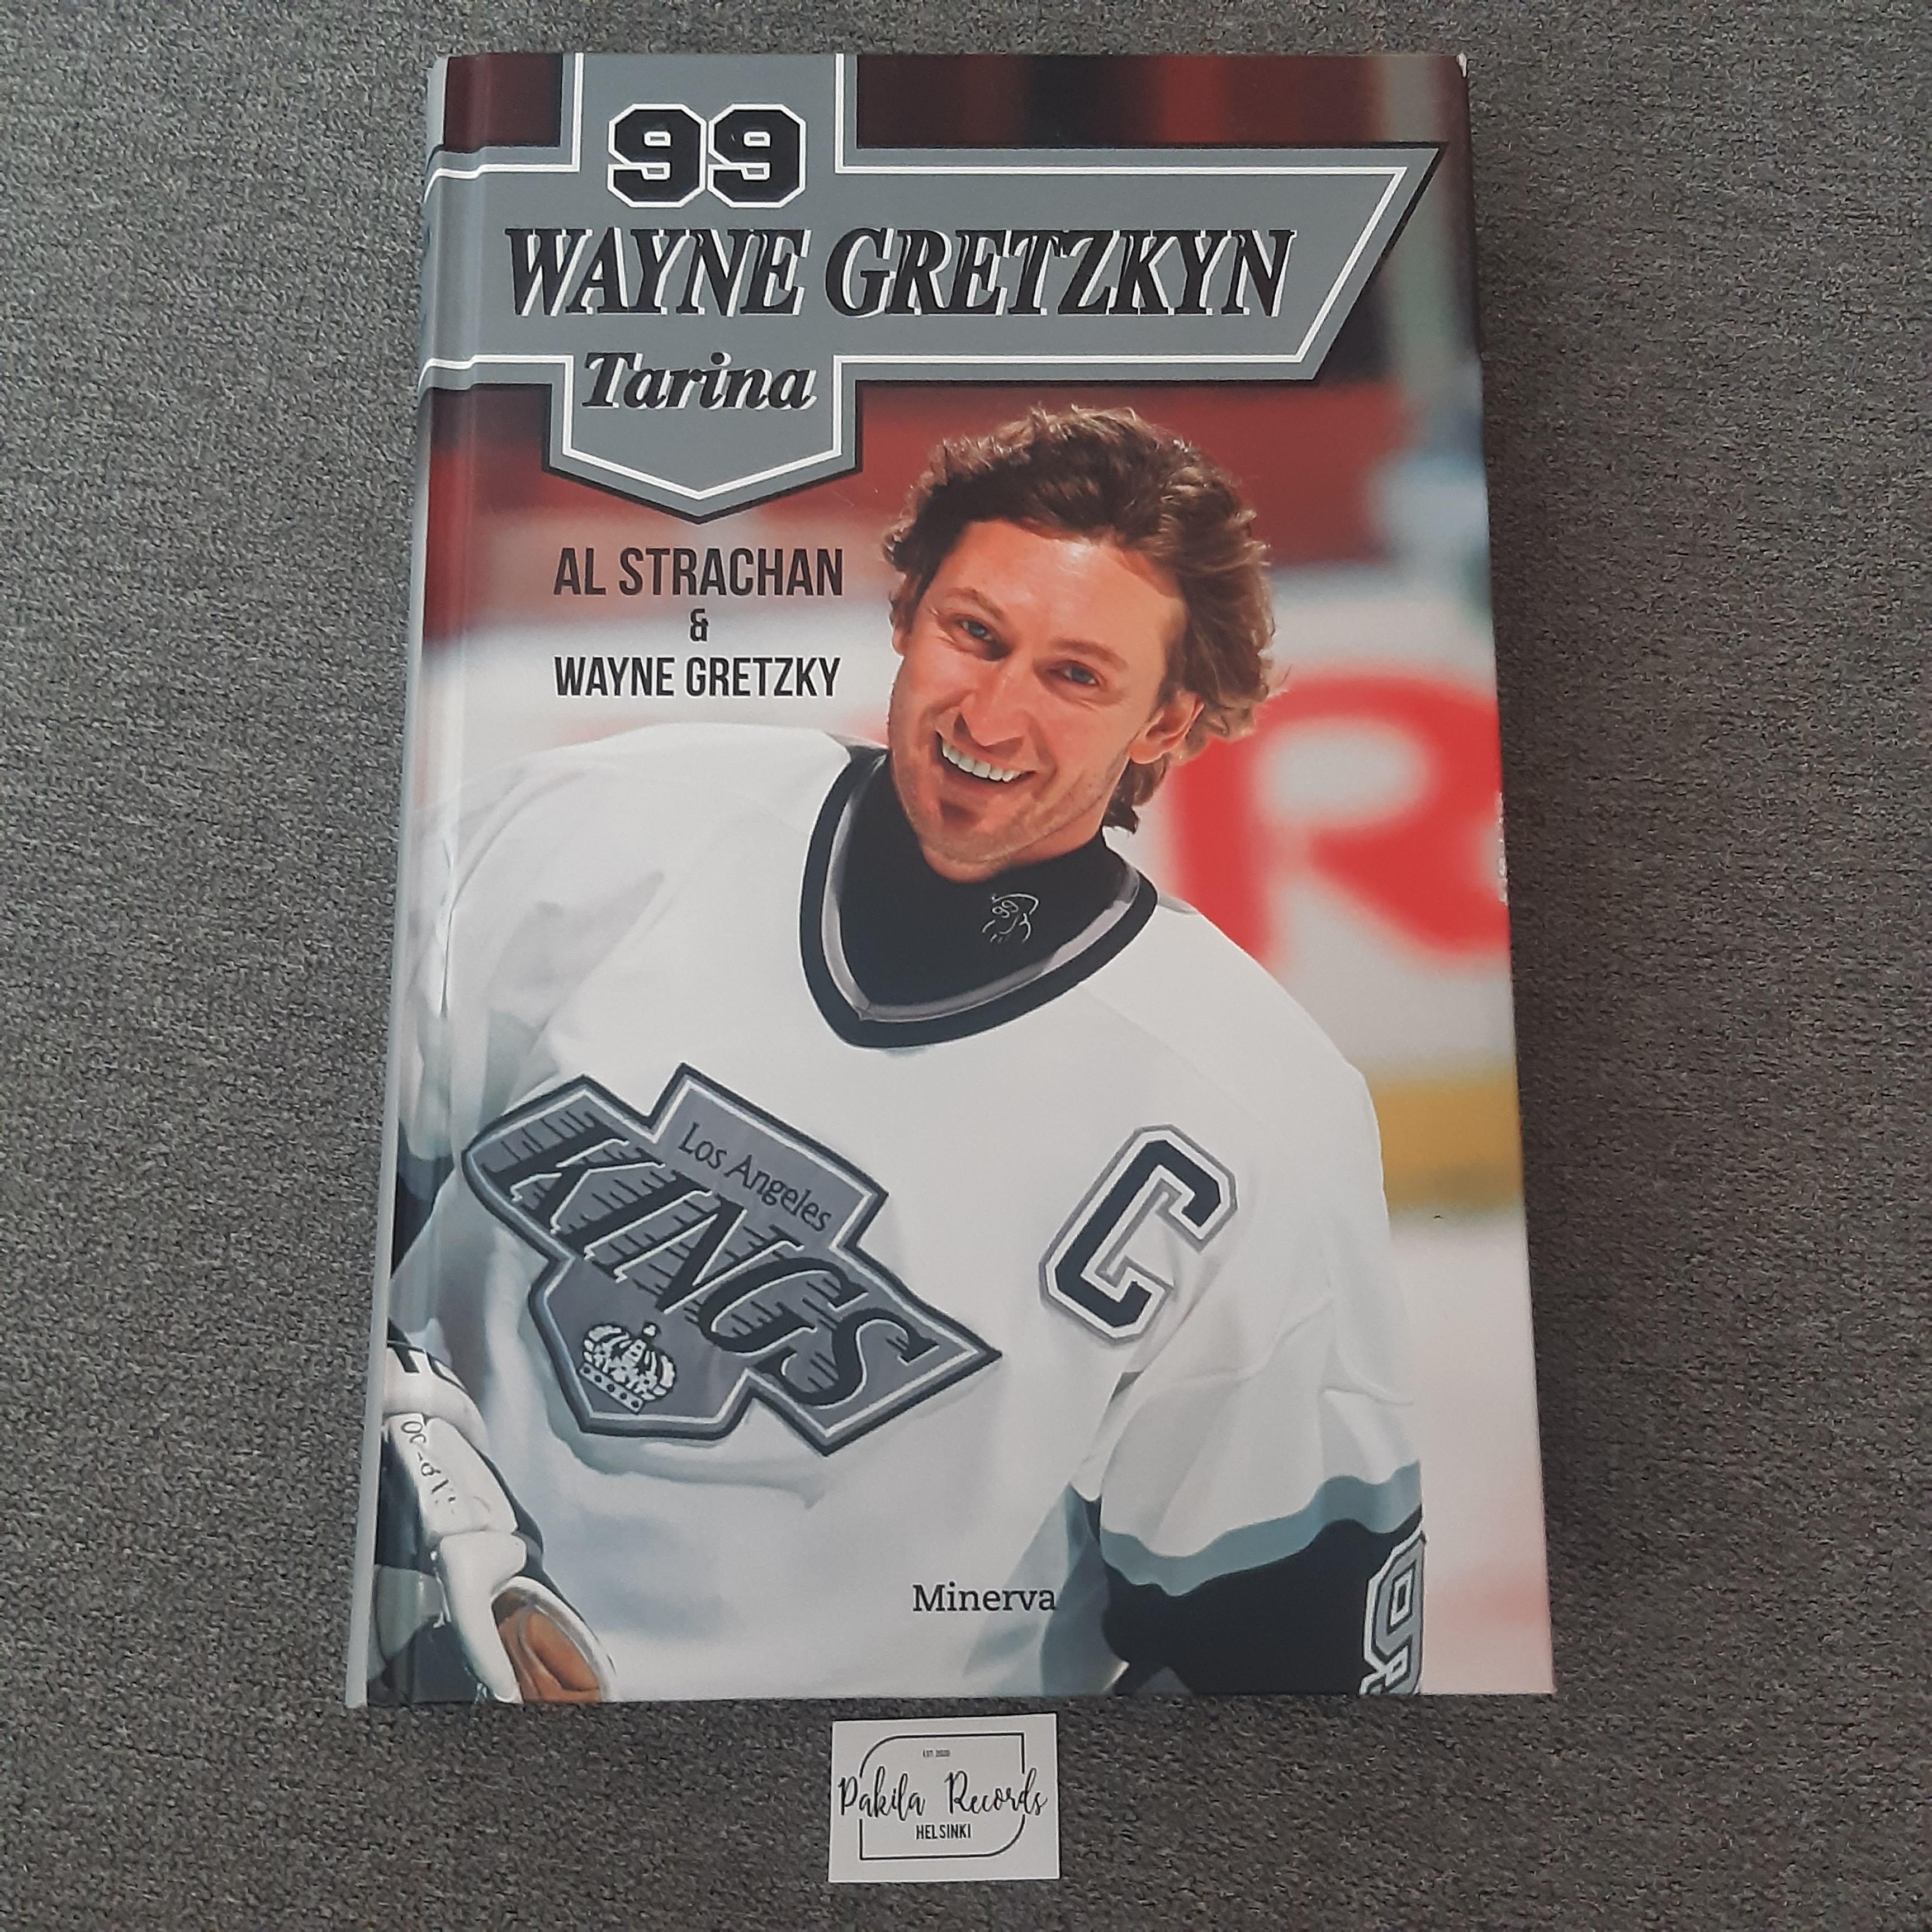 99 Wayne Cretzkyn tarina - Al Strachan & Wayne Cretzky - Kirja (käytetty)